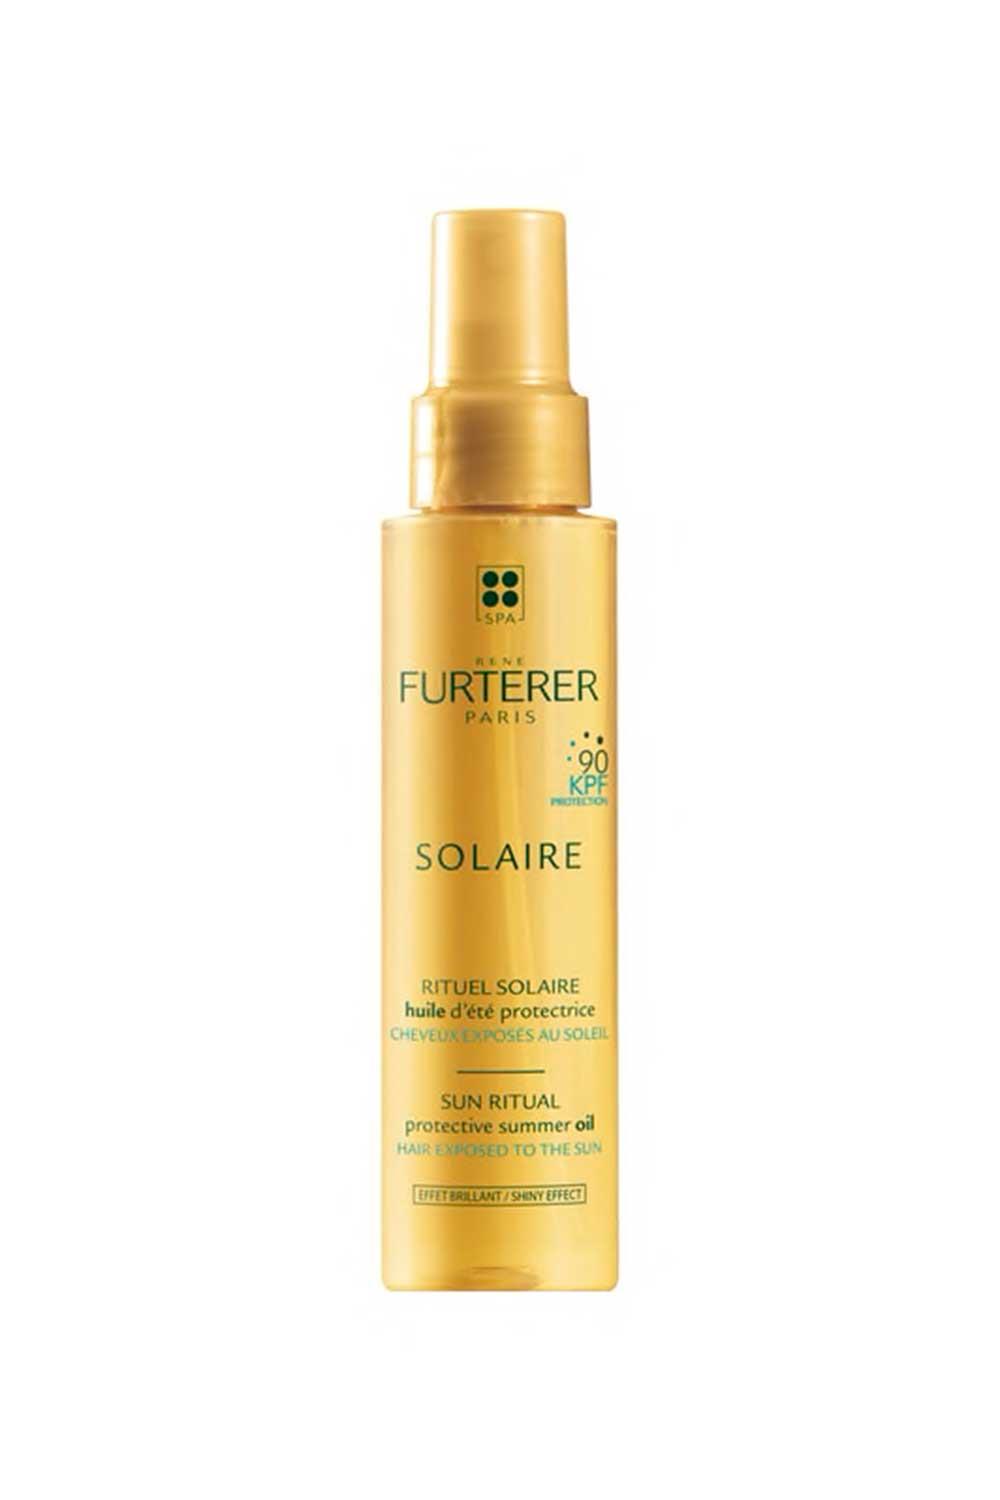 Rene-Furterer-2. Aceite solar protector para el cabello KPF 90 René Furterer